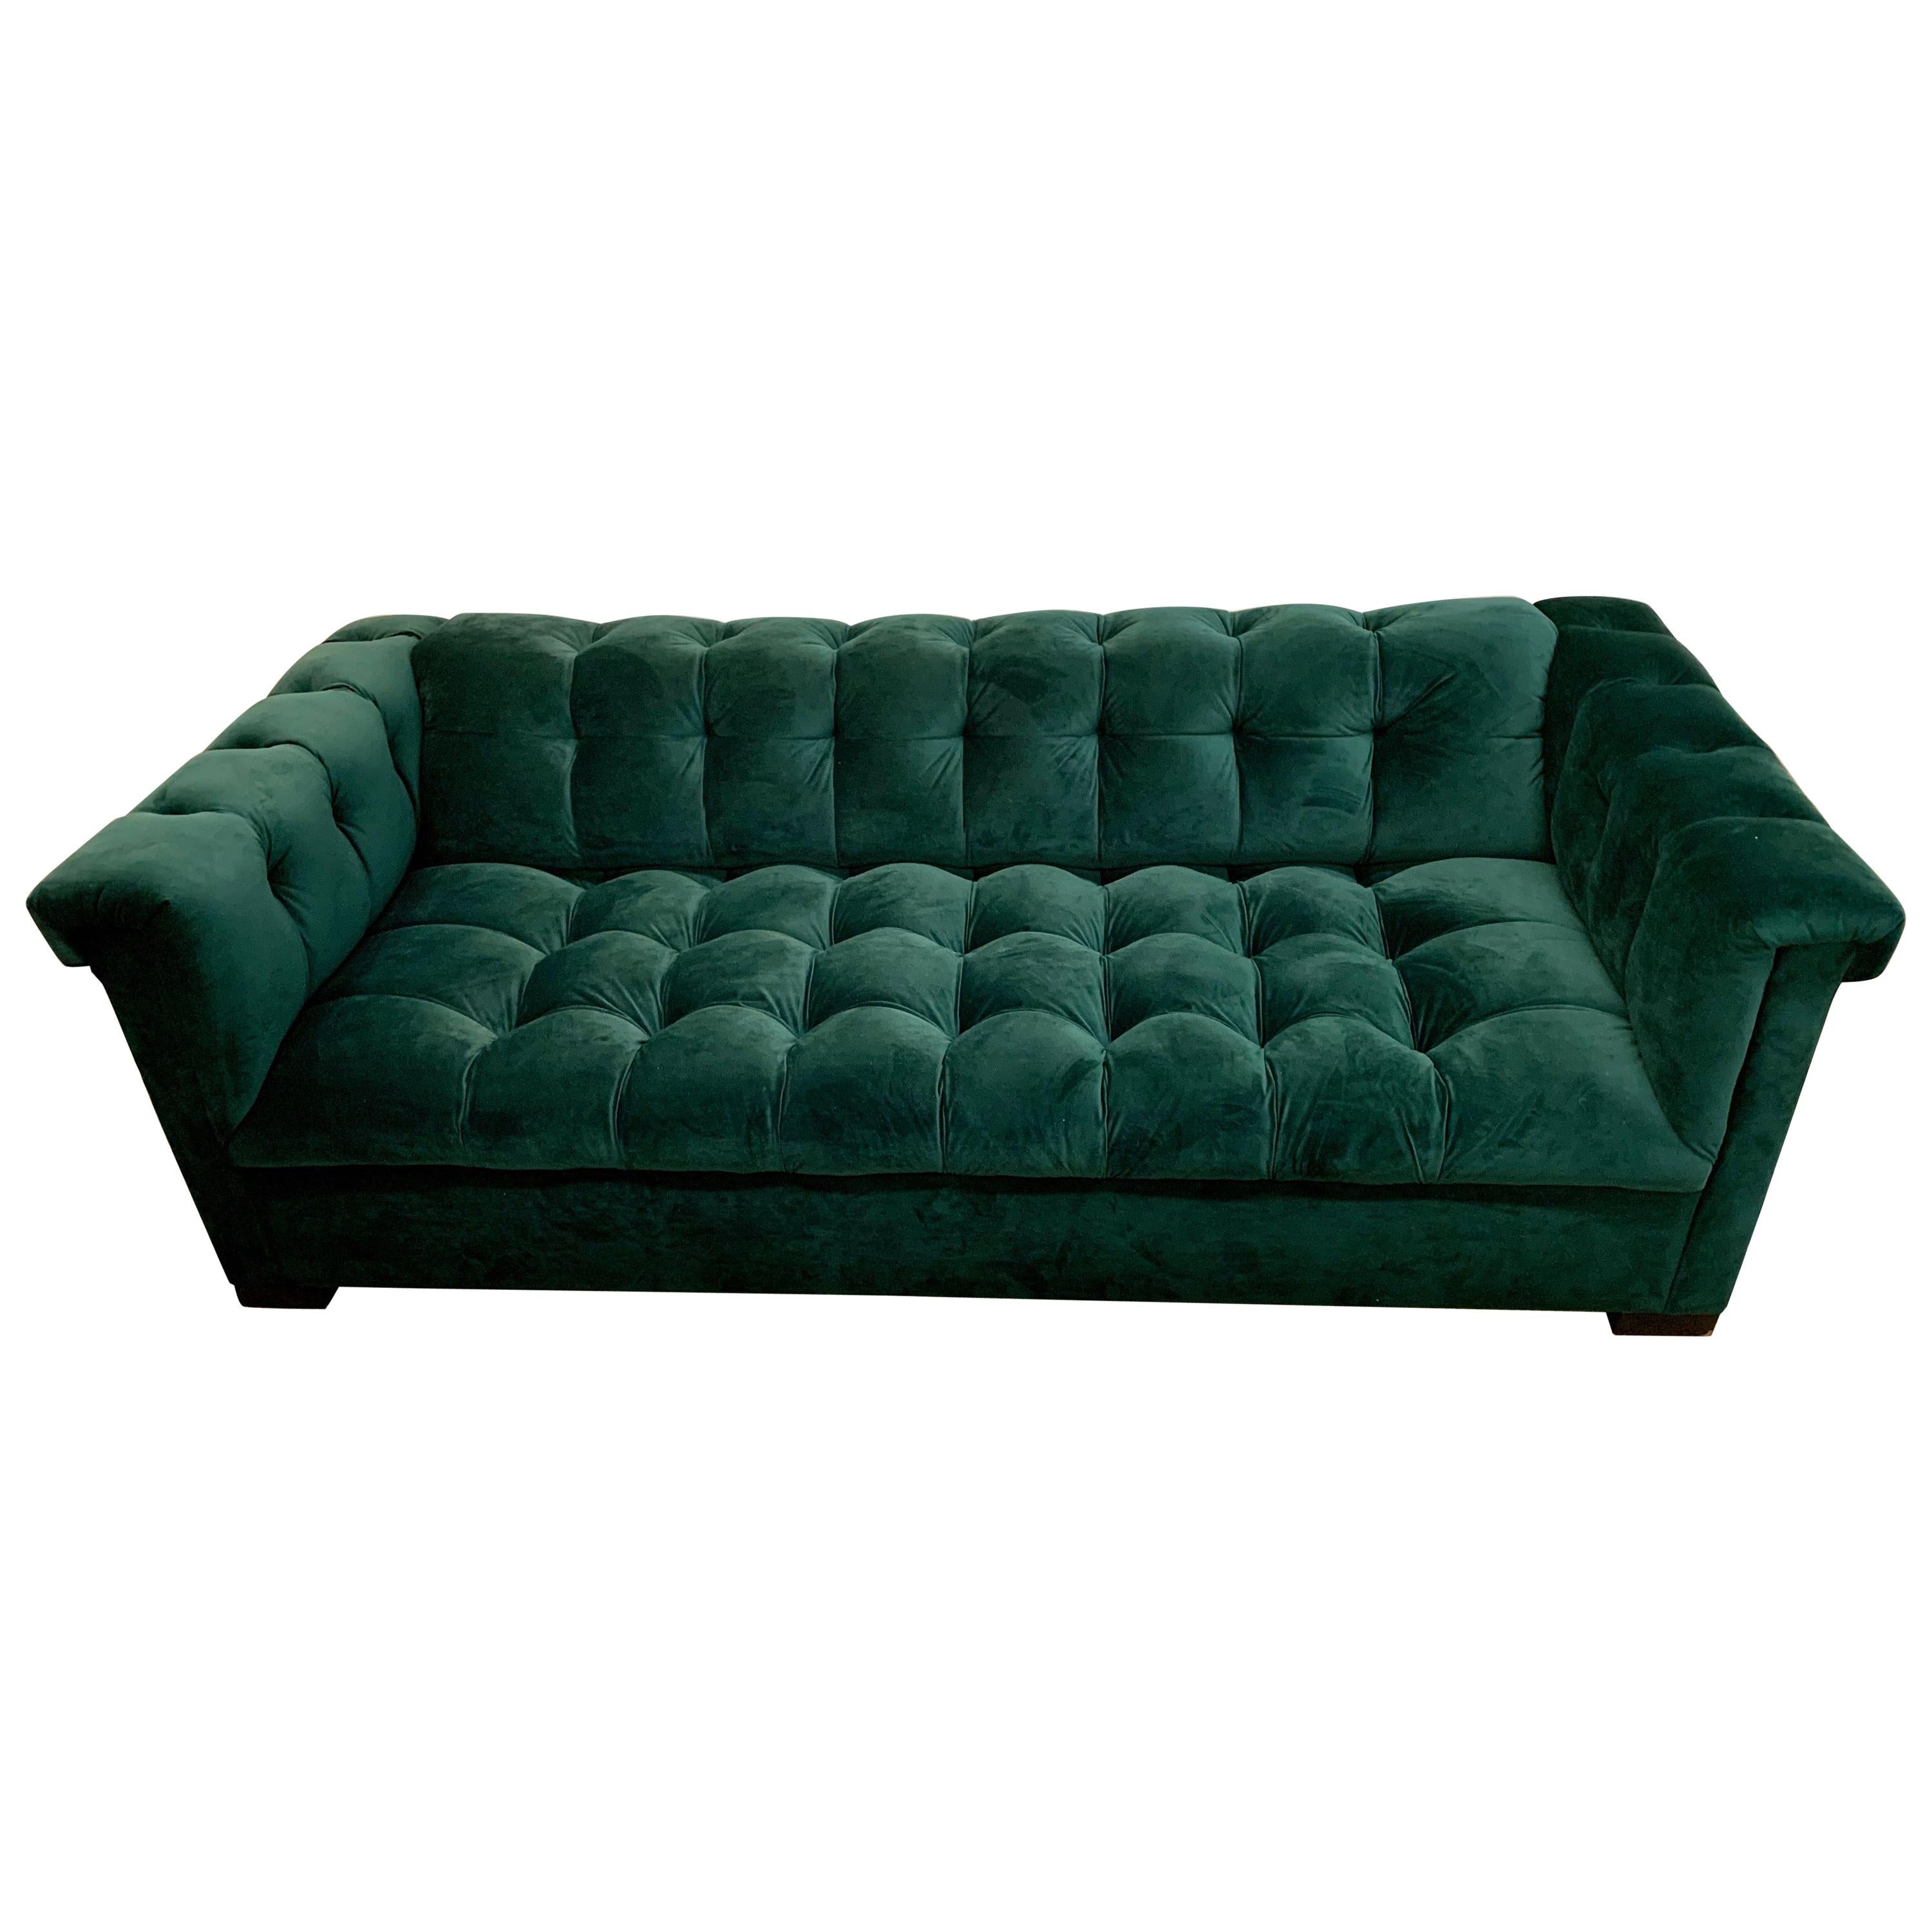 Bespoke Custom British Racing Green Velvet Chesterfield Tufted Sofa